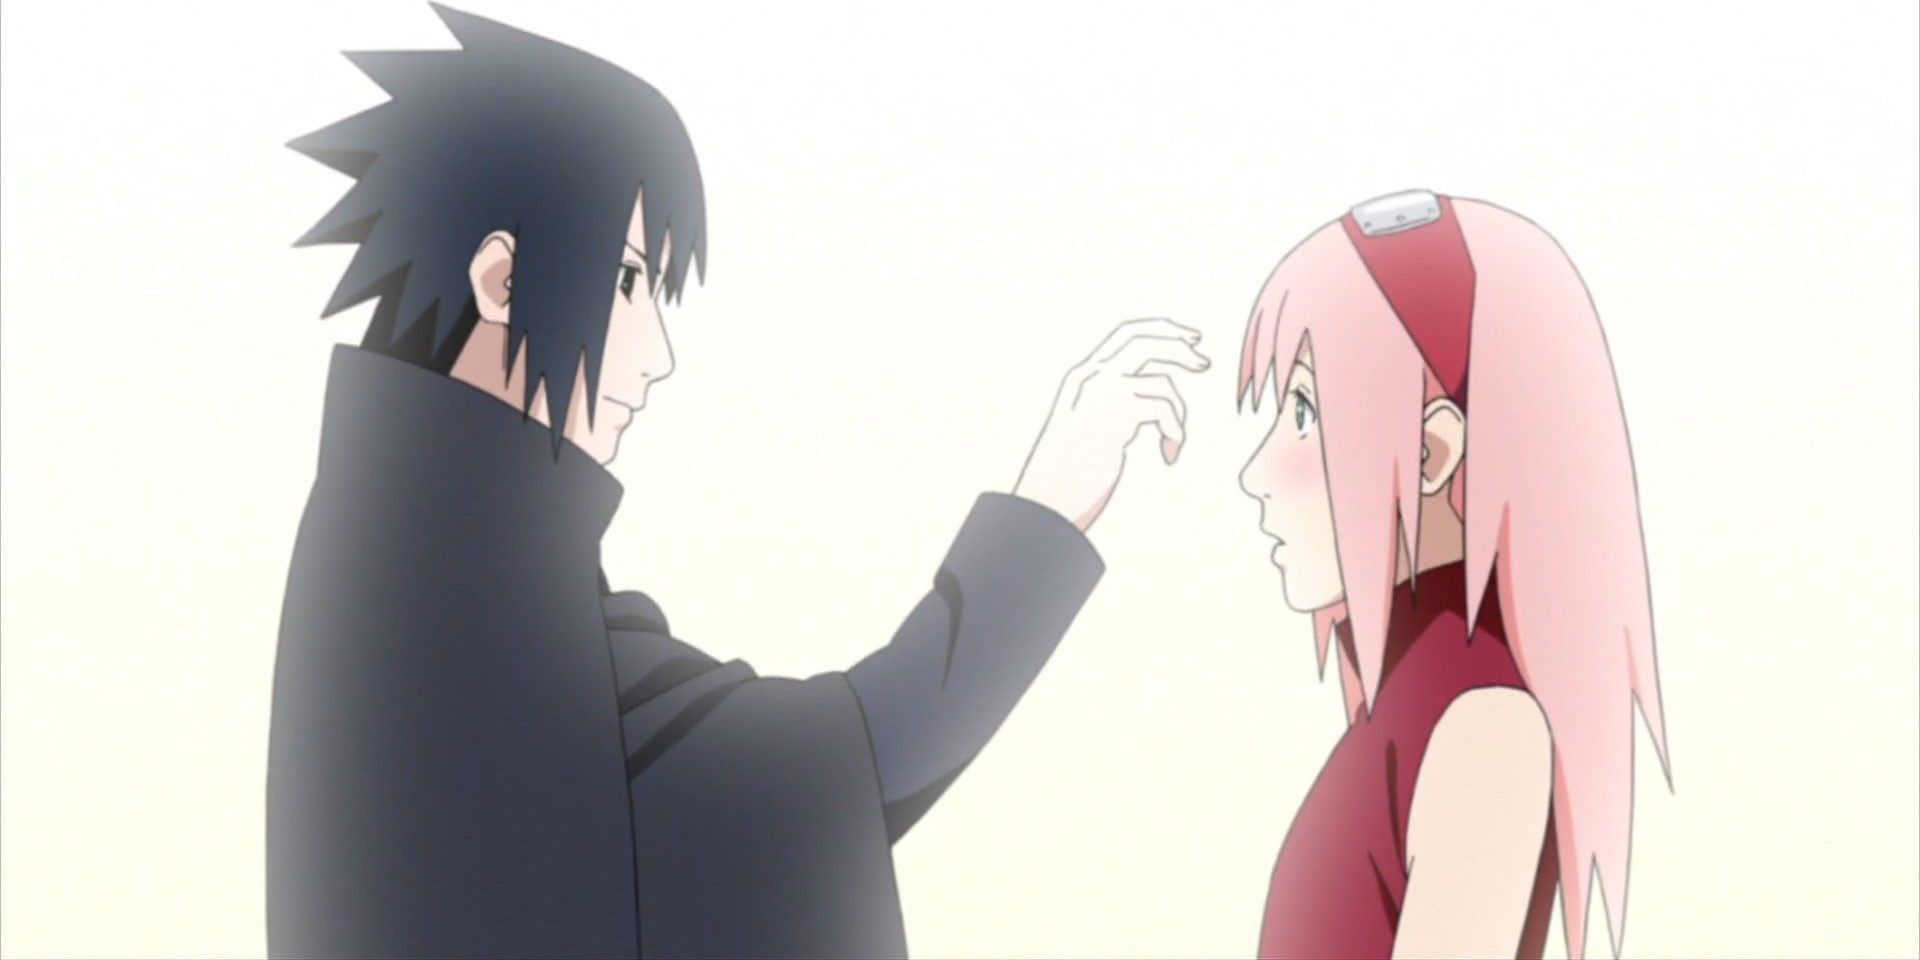 Sasuke poking Sakura's forehead at the end of Naruto.